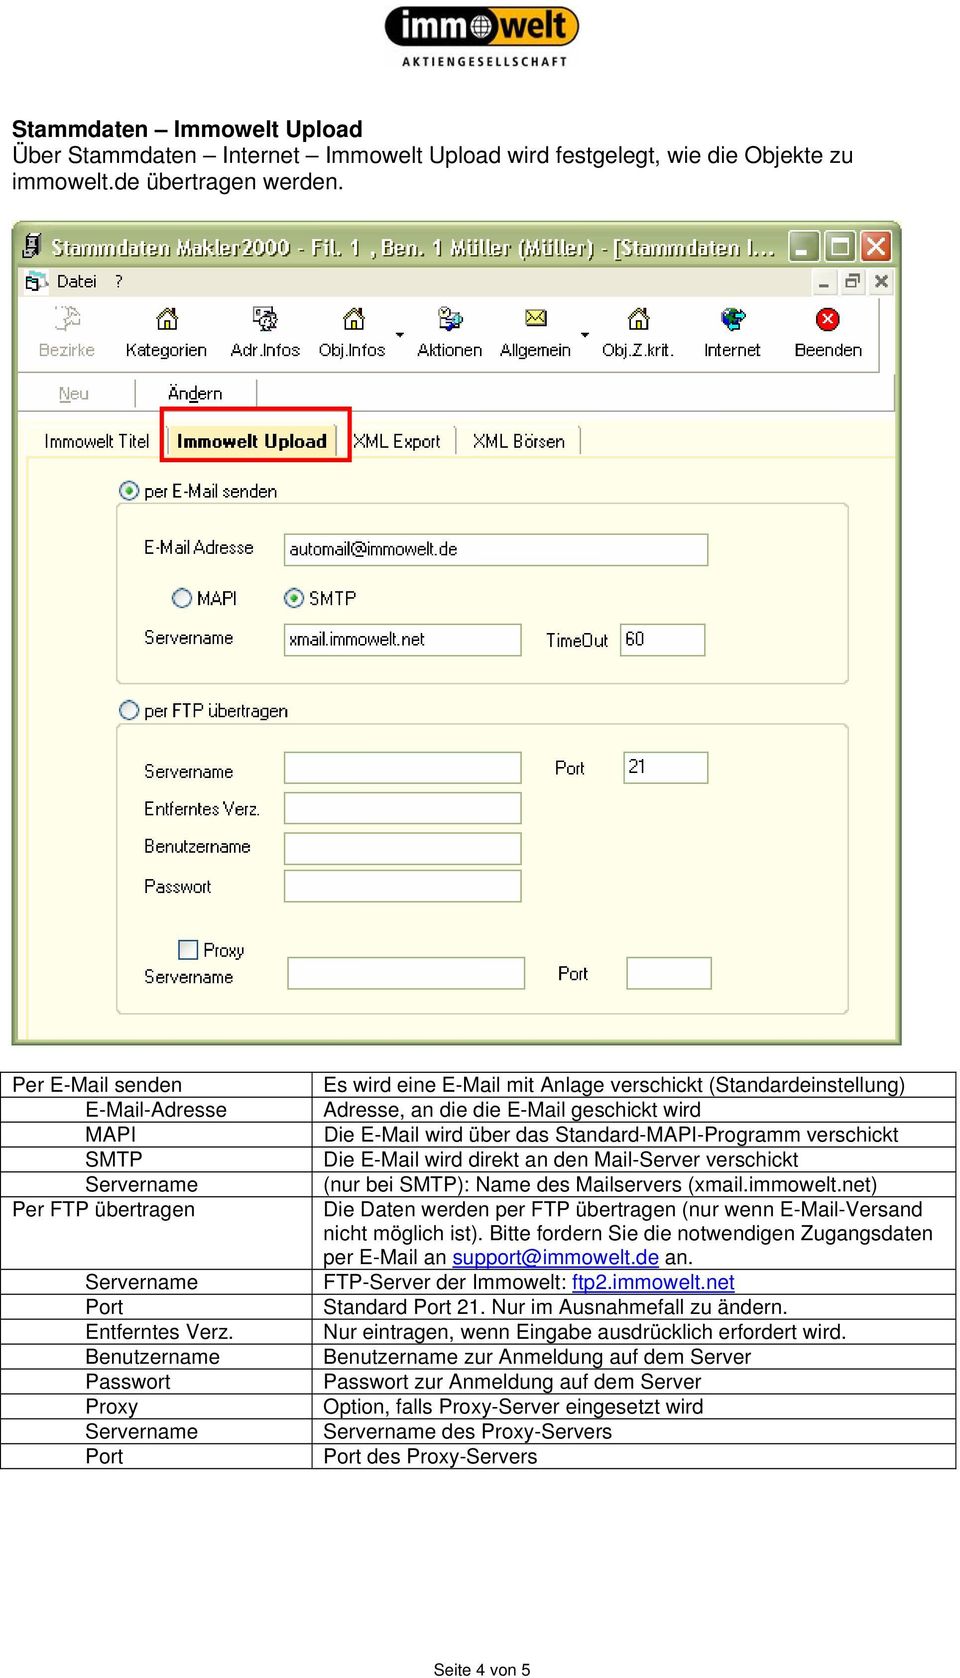 Benutzername Passwort Proxy Port Es wird eine E-Mail mit Anlage verschickt (Standardeinstellung) Adresse, an die die E-Mail geschickt wird Die E-Mail wird über das Standard-MAPI-Programm verschickt